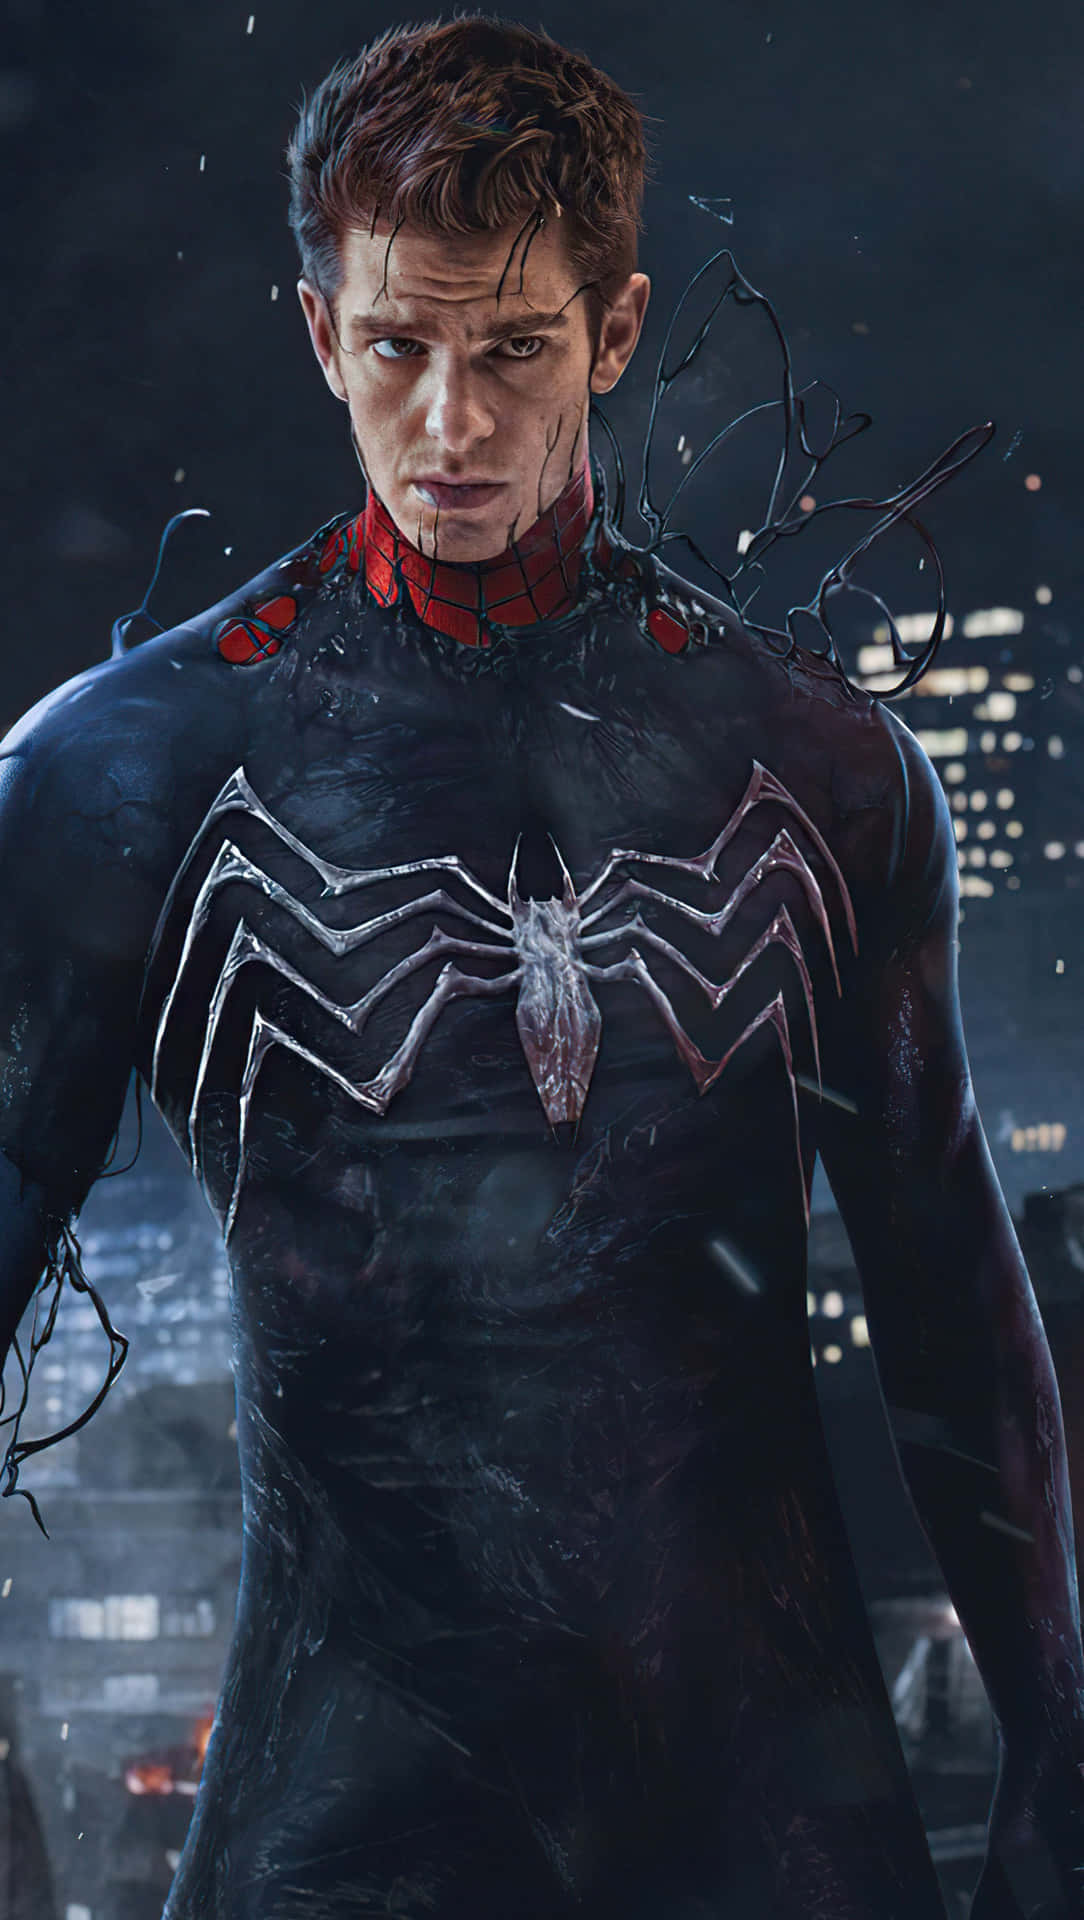 Andrew Garfield Spider Man Wallpaper  iXpap  Andrew garfield spiderman  The amazing spiderman 2 Spiderman